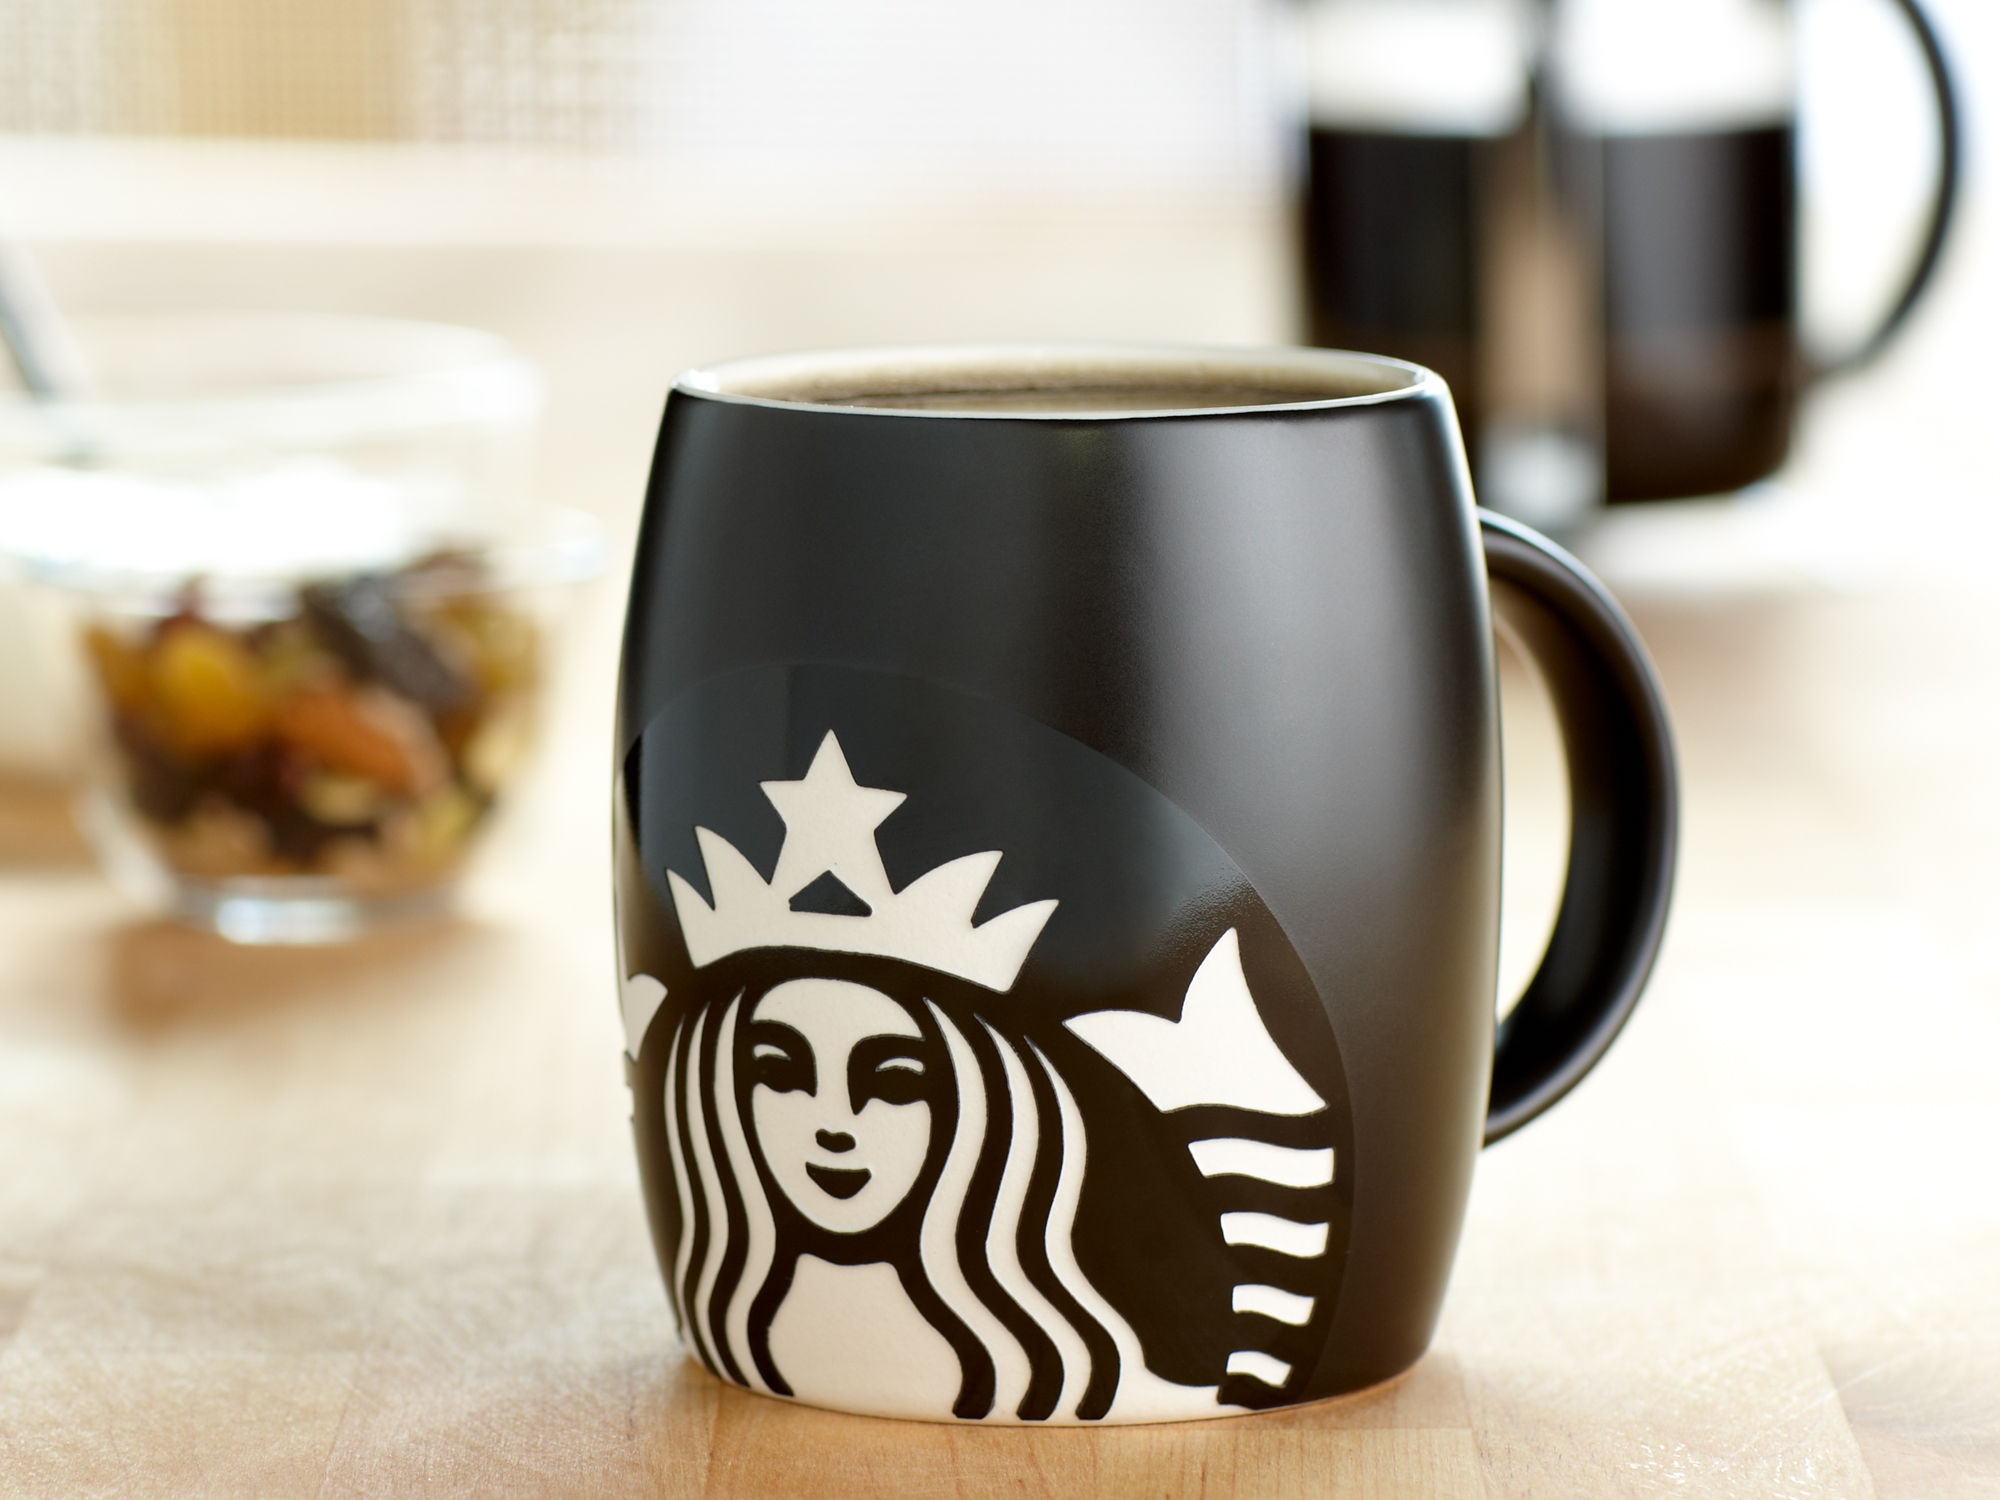 Starbucks Wallpapers - Starbucks New Logo 2011 , HD Wallpaper & Backgrounds